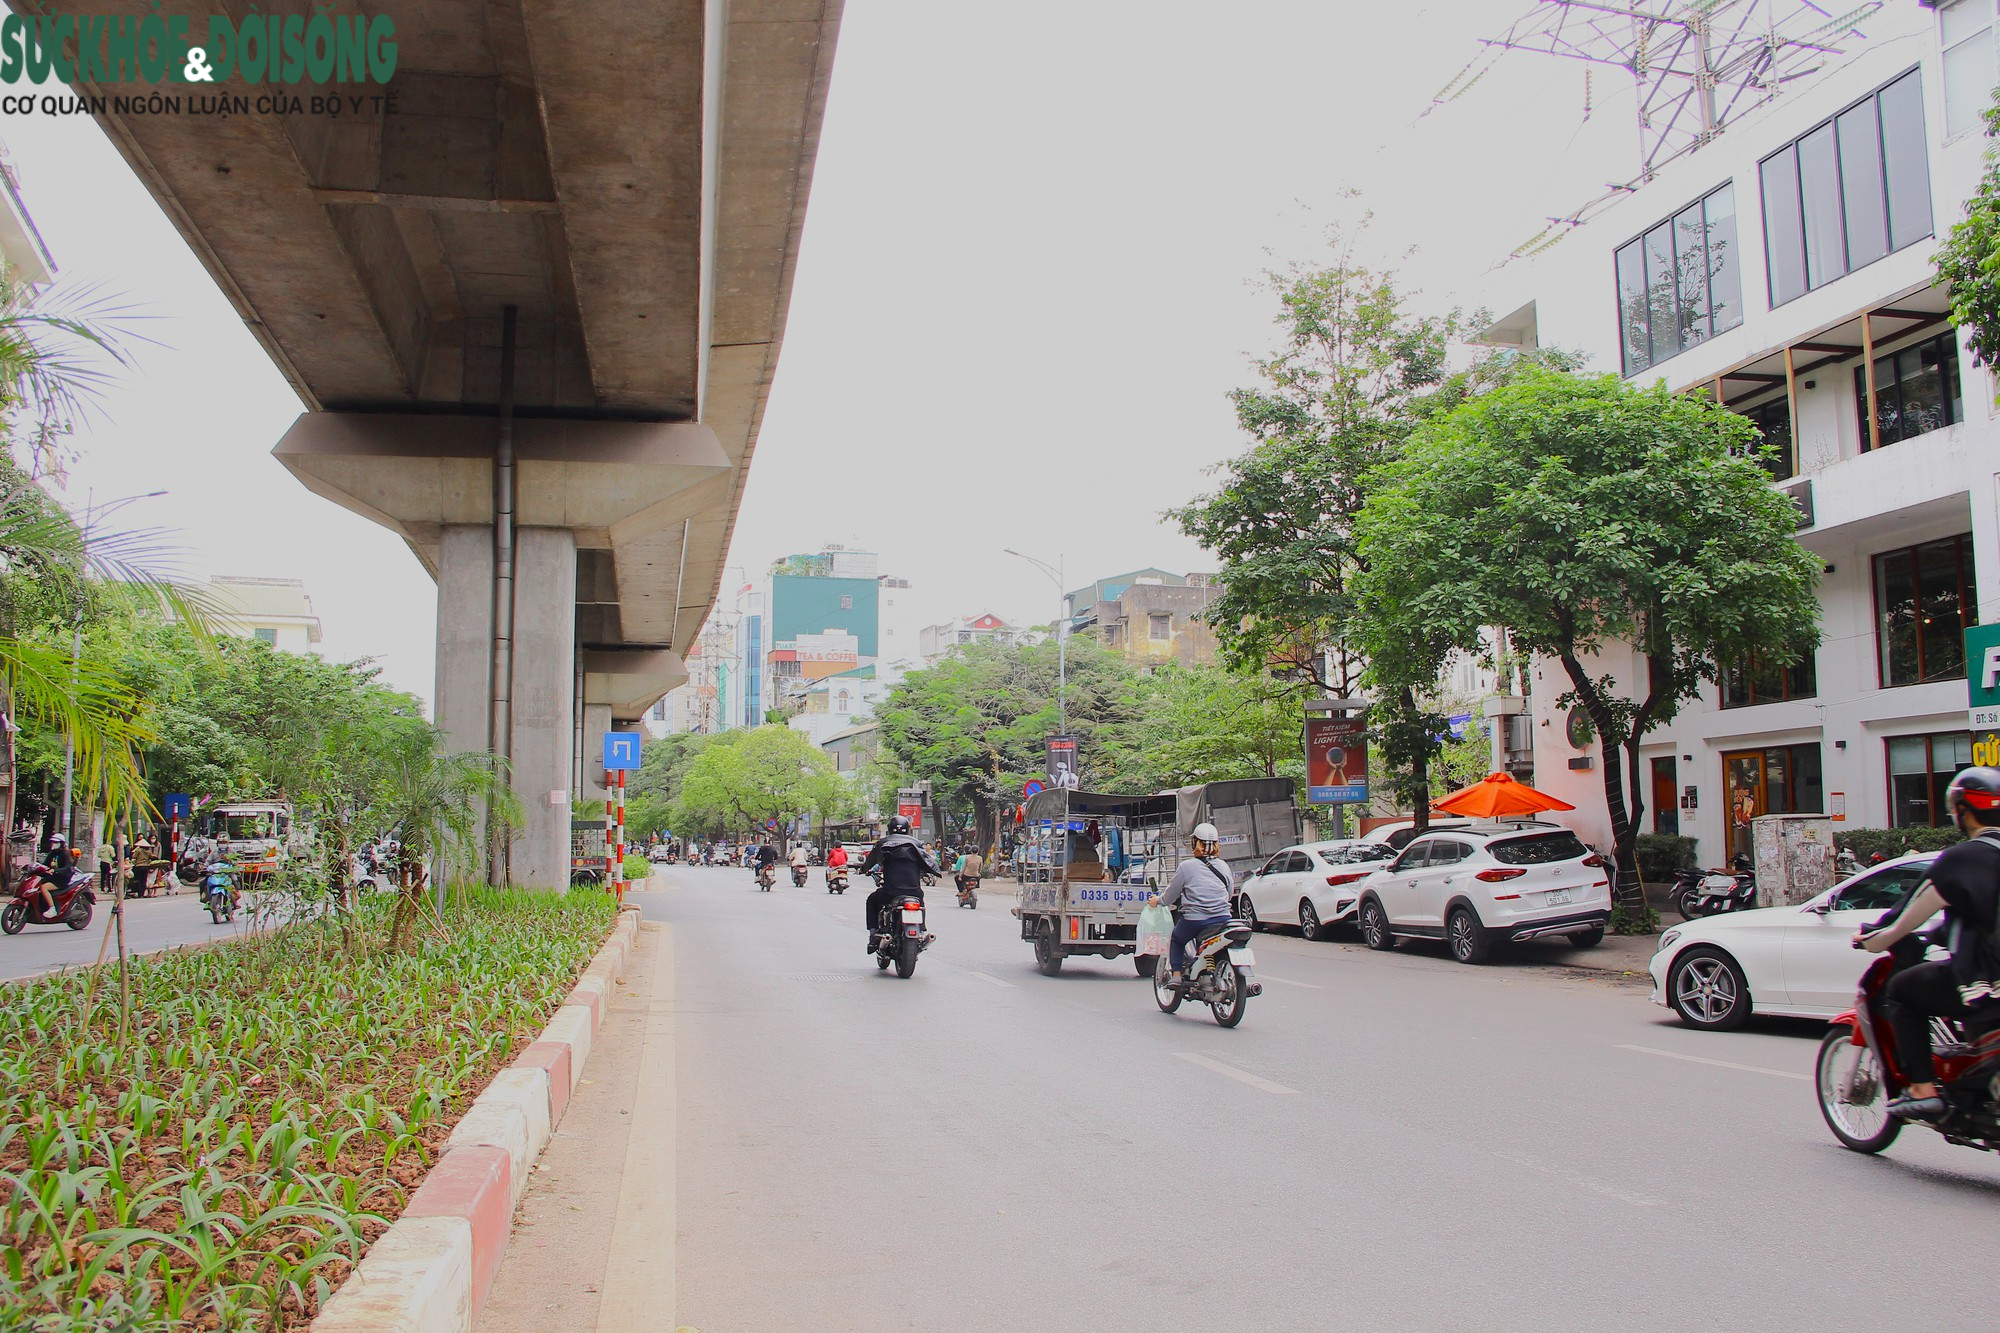 Hà Nội: Cận cảnh 3 địa điểm dự kiến trở thành phố đi bộ mới - Ảnh 11.